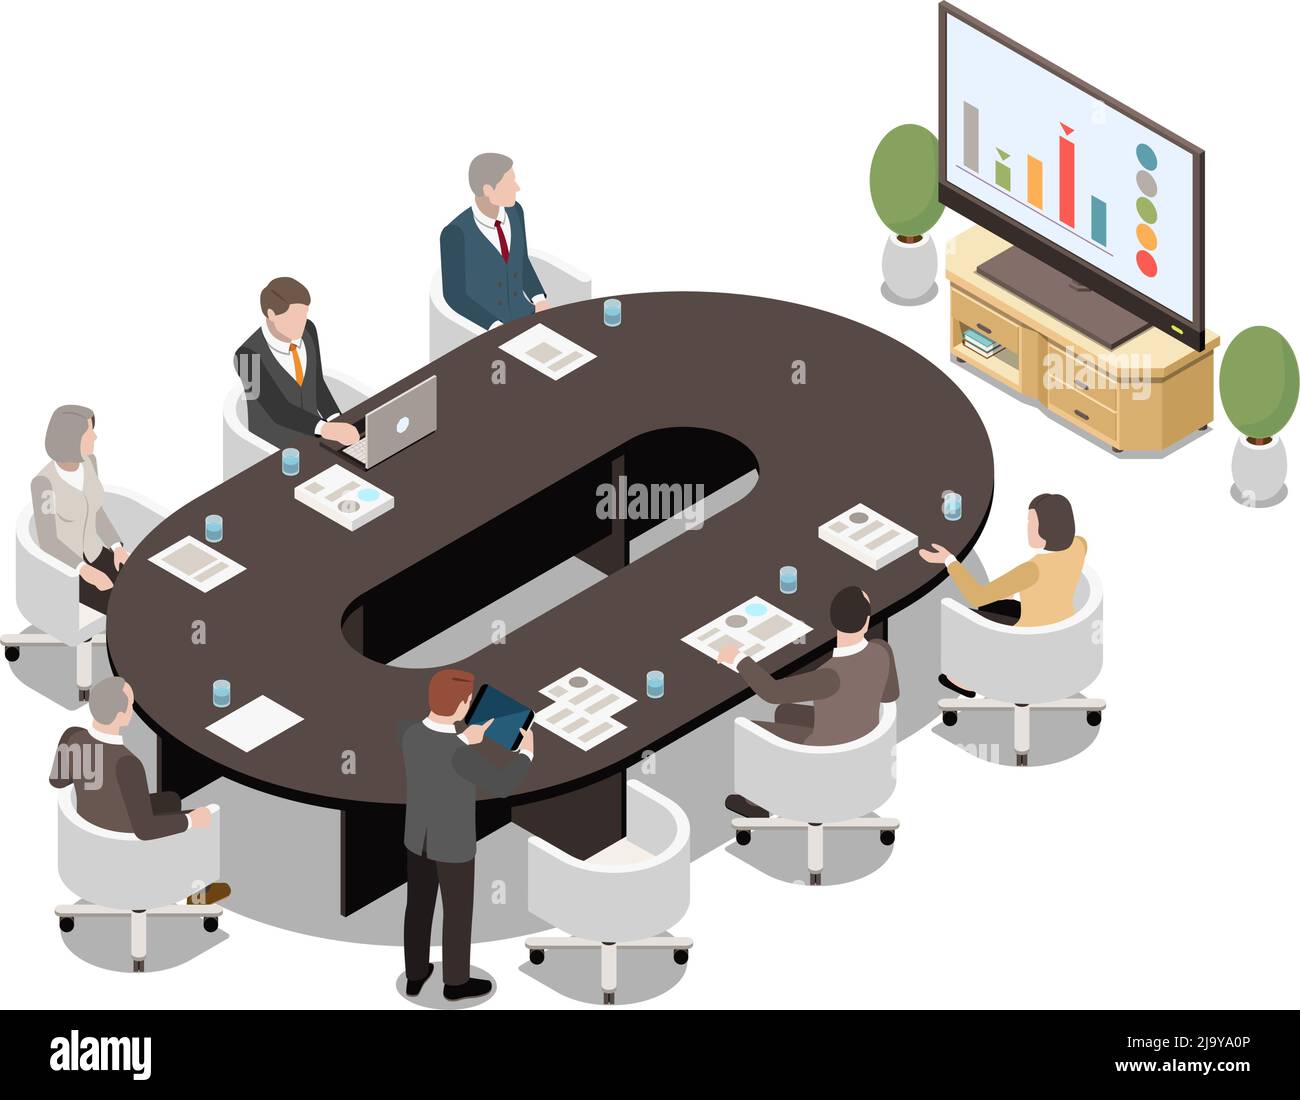 Les hommes d'affaires assis sur un bureau ovale regardent la présentation de l'écran lcd dans la salle de réunion. illustration vectorielle isométrique 3d Illustration de Vecteur